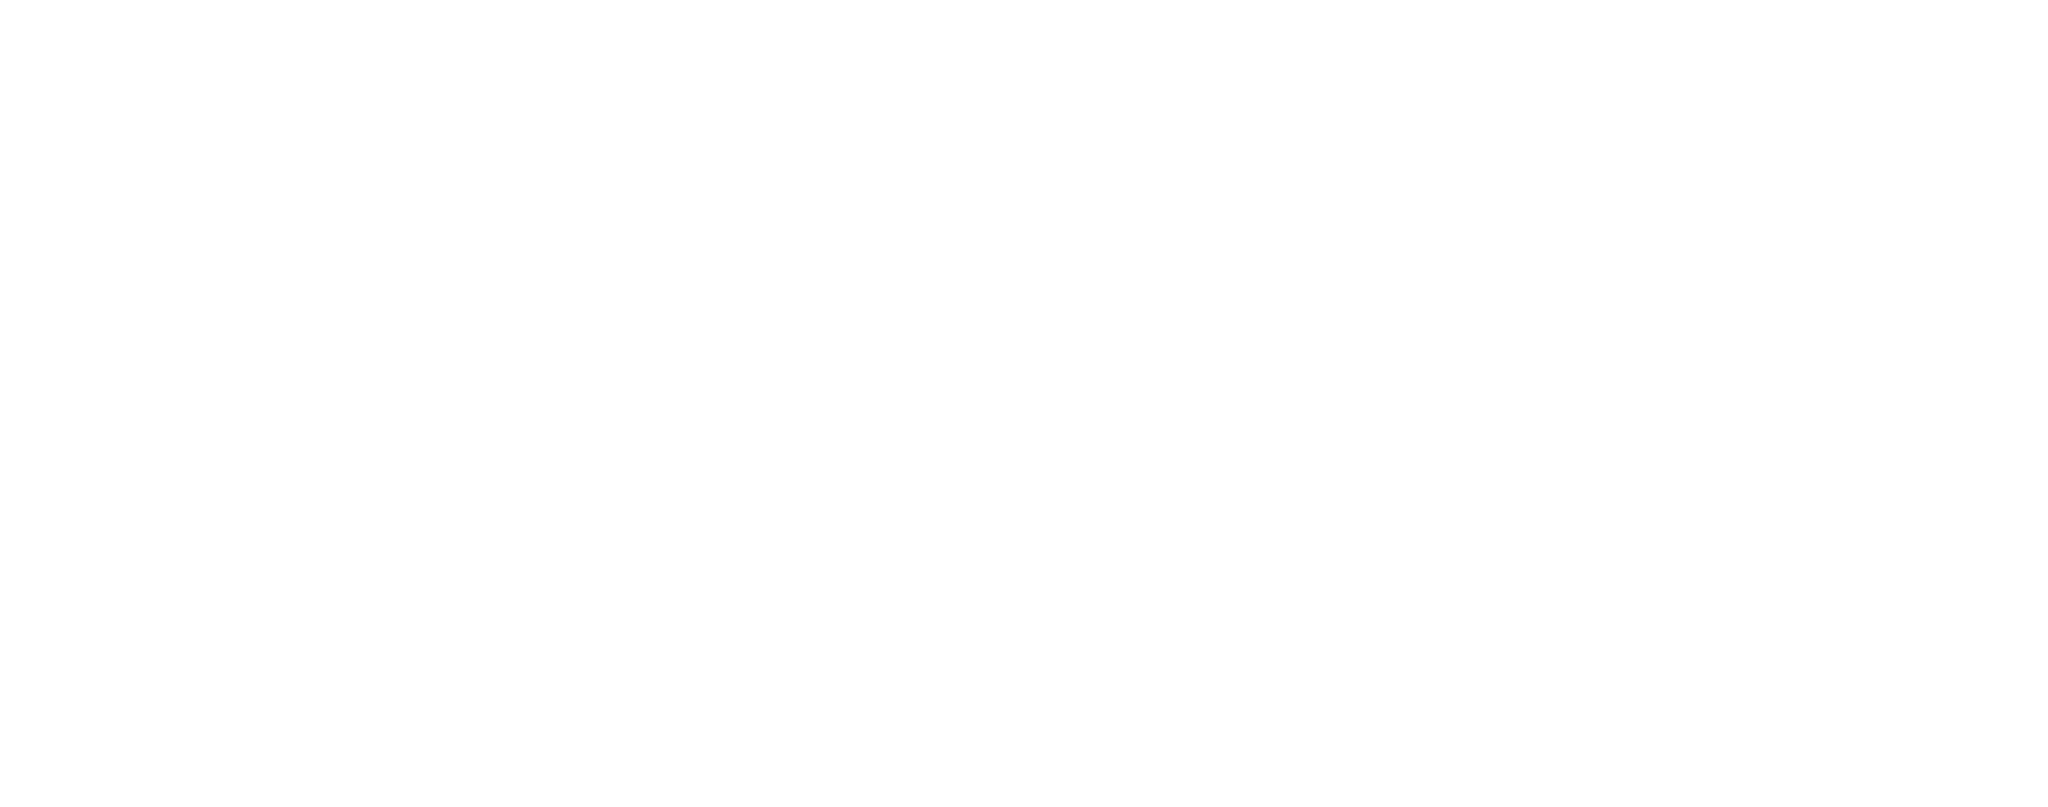 Lappin180 Logo in White